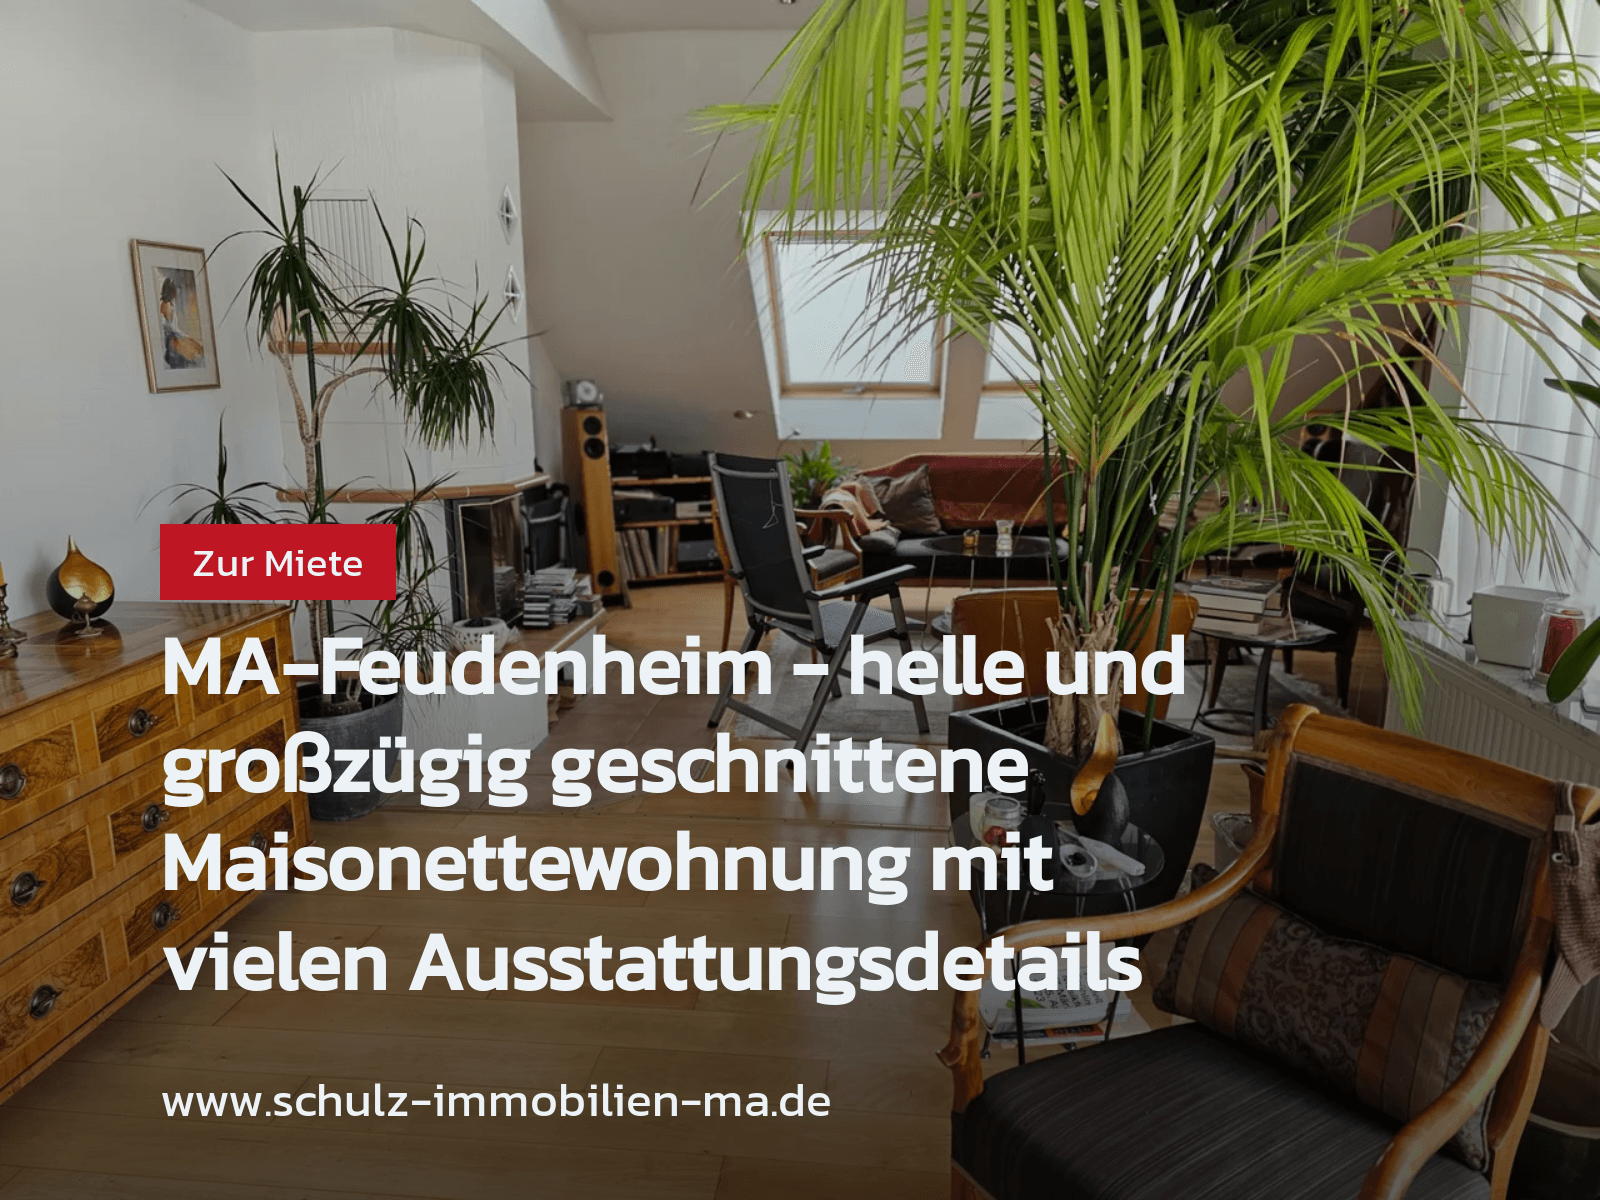 Nicht mehr verfügbar: MA-Feudenheim – helle und großzügig geschnittene Maisonettewohnung mit vielen Ausstattungsdetails